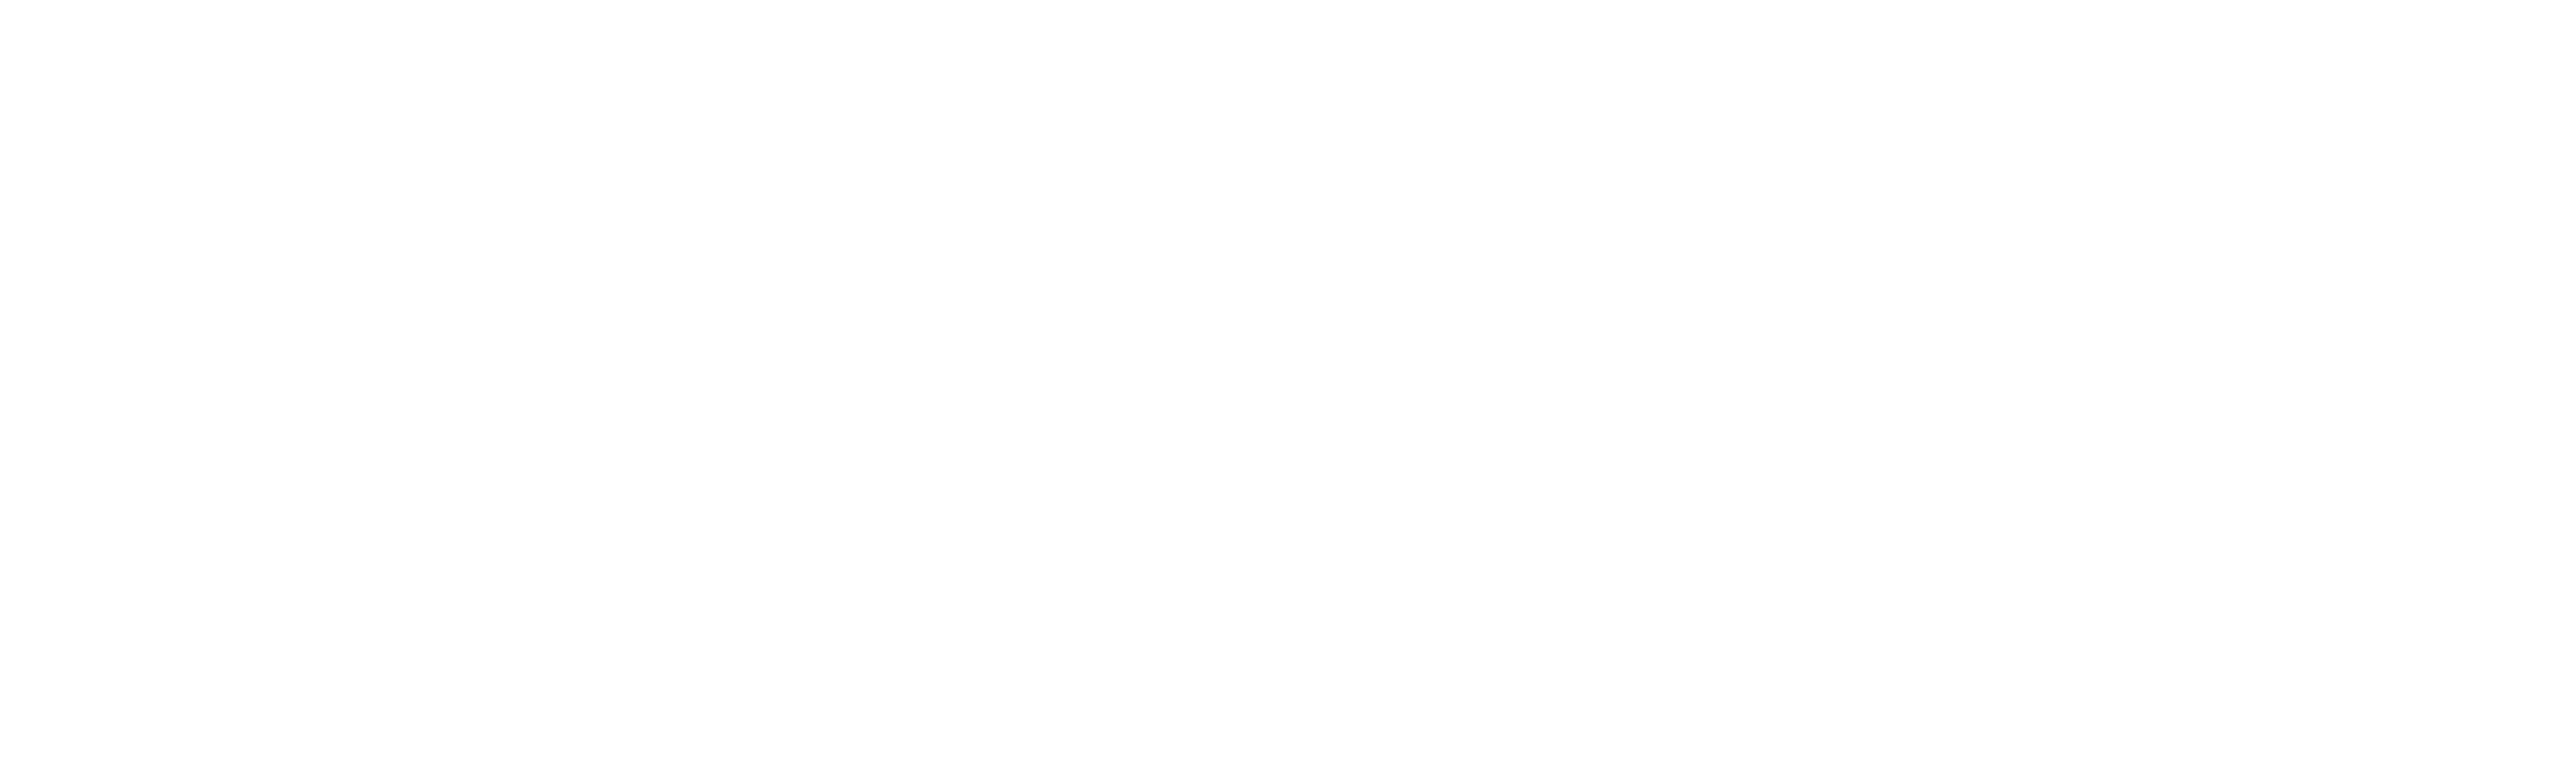 Museo Archeologico del Chianti